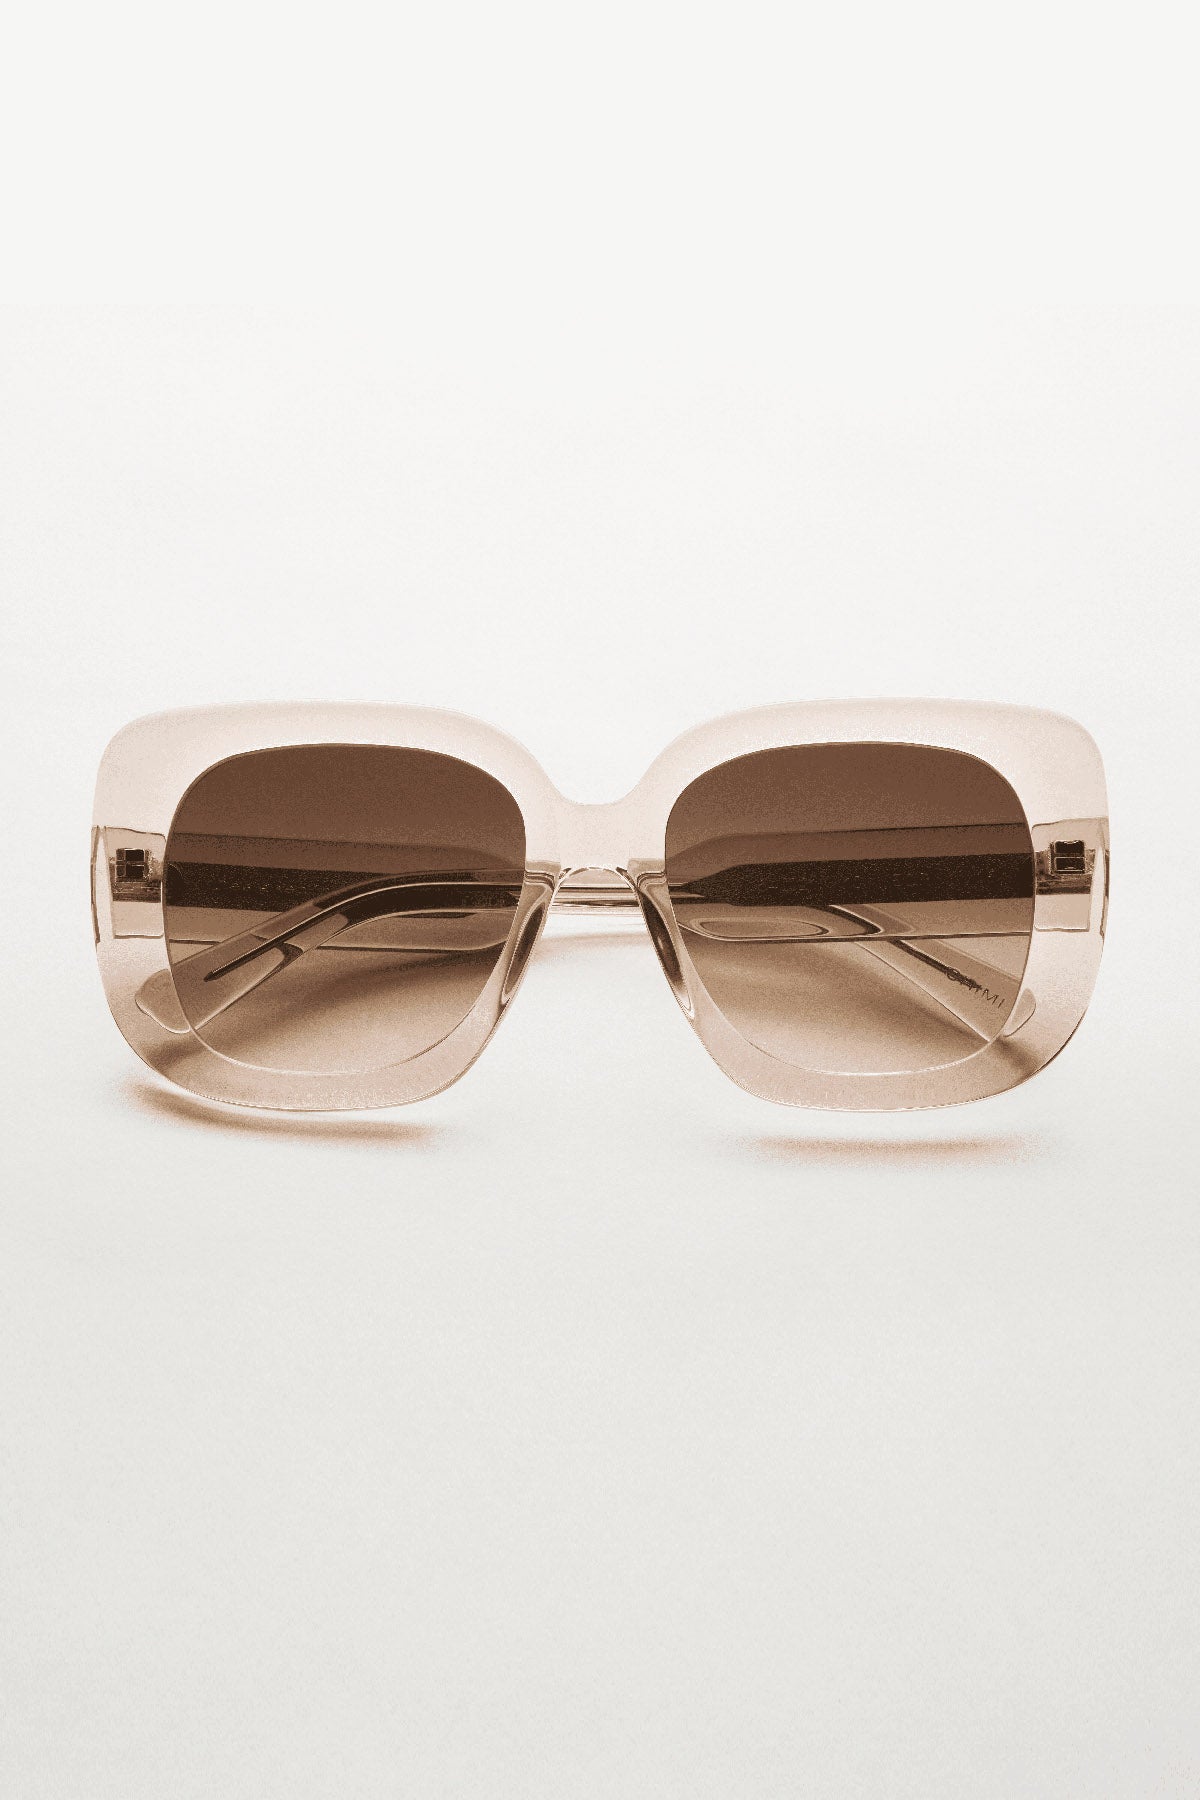 Chimi 10 Sunglasses Ecru Front-22132415103169